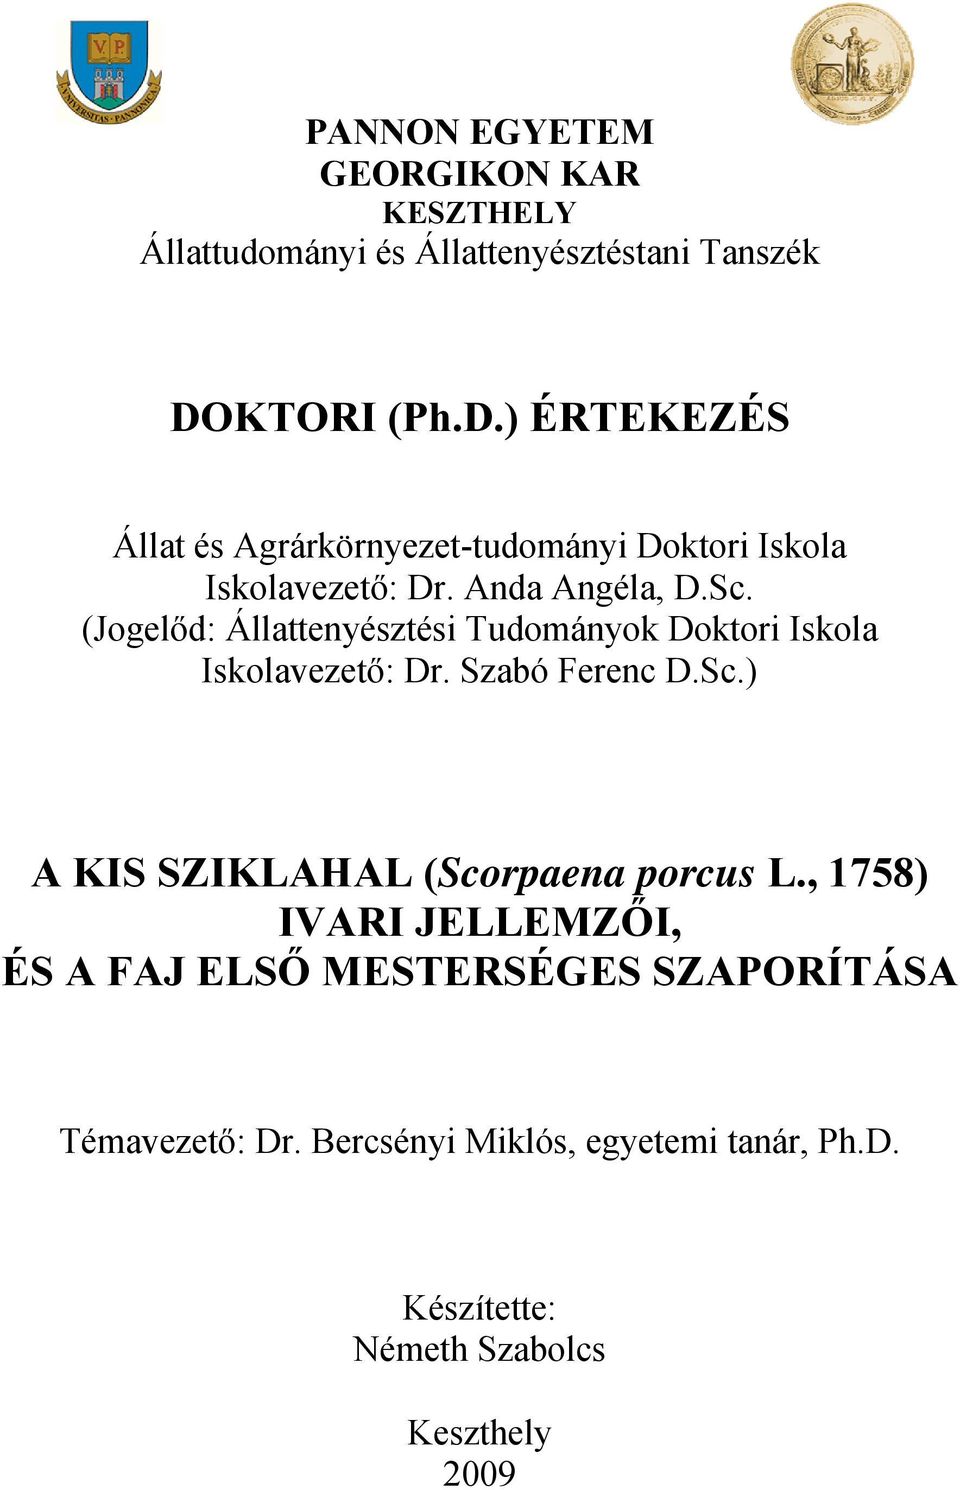 (Jogelőd: Állattenyésztési Tudományok Doktori Iskola Iskolavezető: Dr. Szabó Ferenc D.Sc.